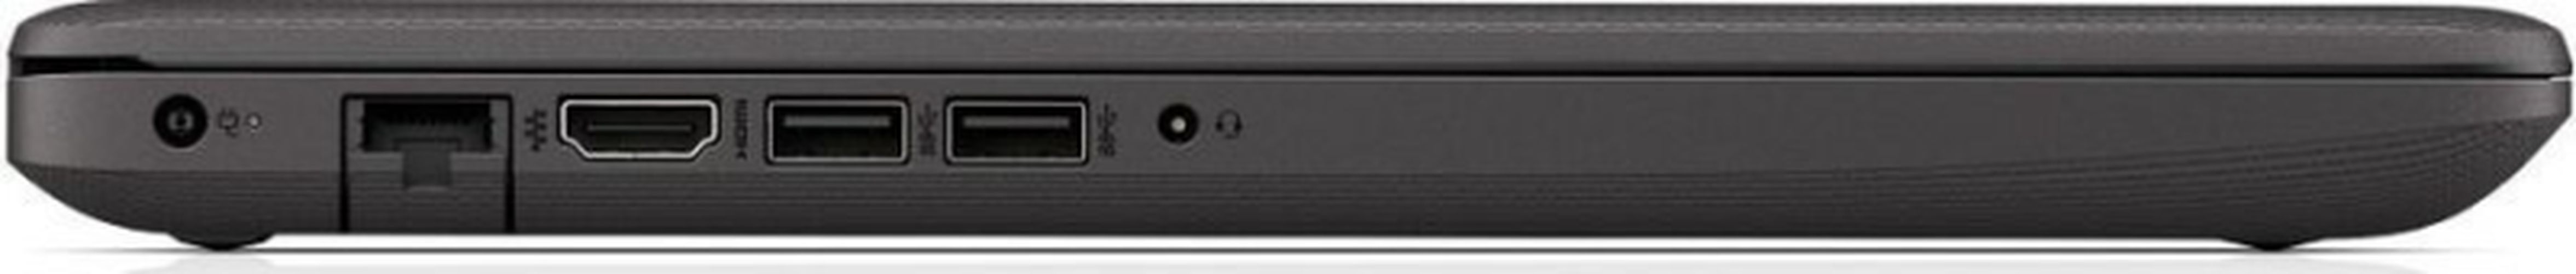 Noutbuk HP 250 G8 (2W8Z6EA) | i3-1115G4 | DDR4 8 GB | SSD 256 GB, Black, фото